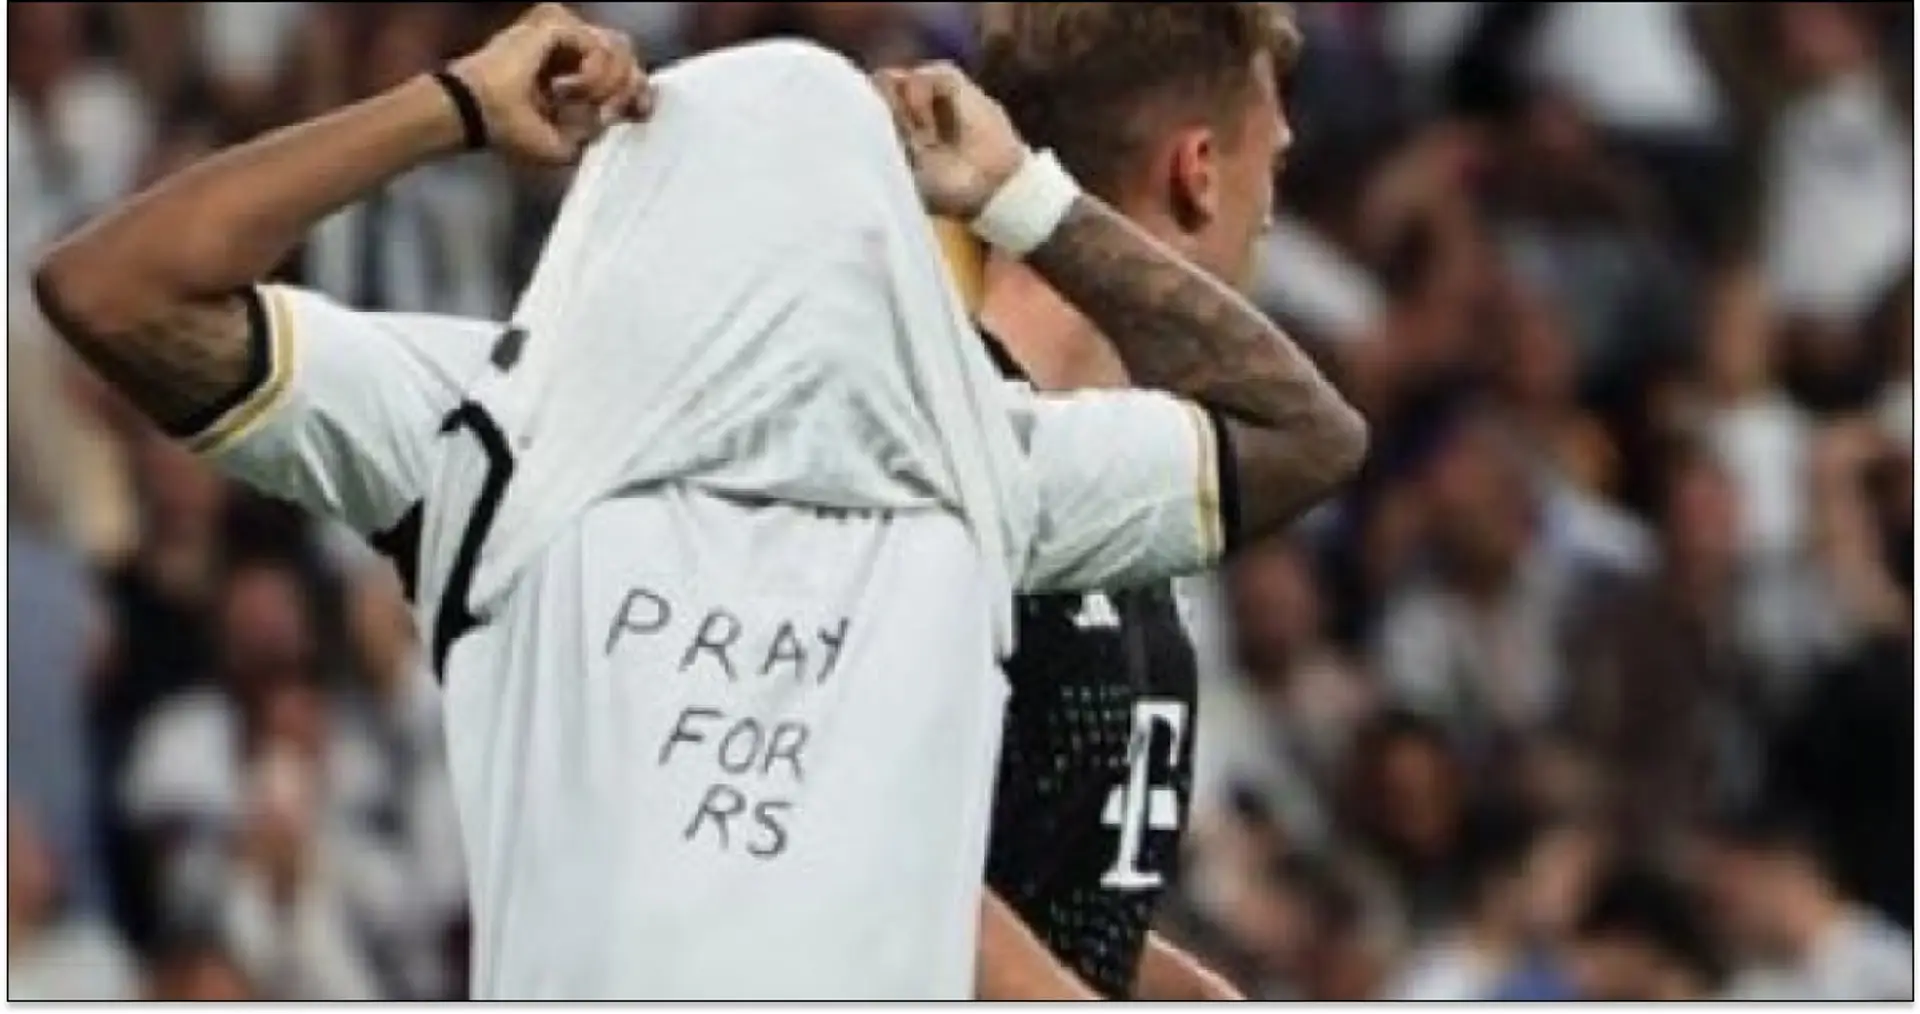 'Pray for RS': lo que significa el mensaje de Rodrydo debajo de su camiseta